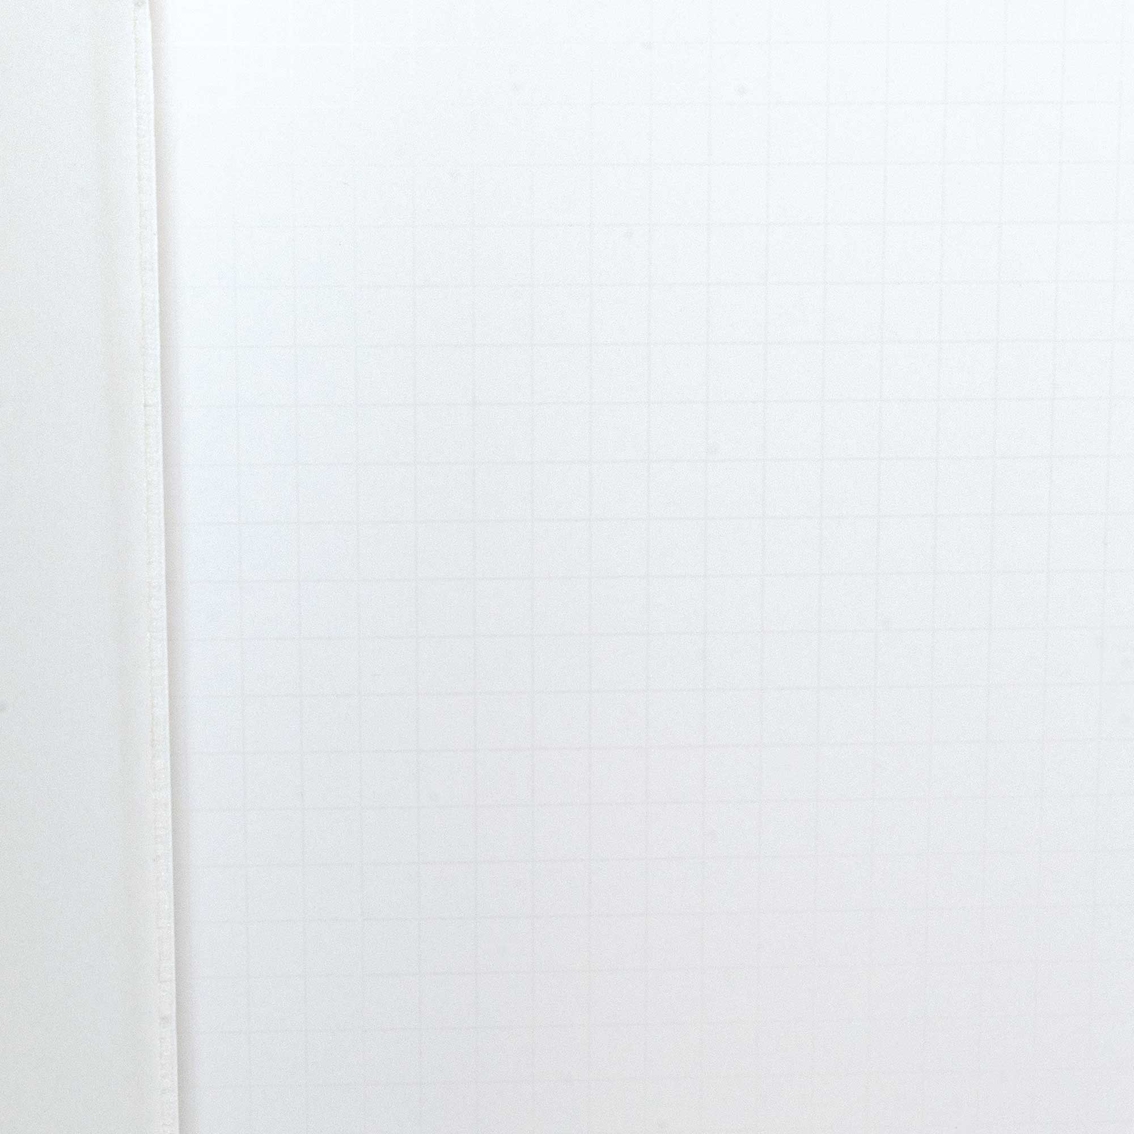 Ghostline Tri Fold Foam Poster Board 28 in. x 22 in., White - Image 4 of 4